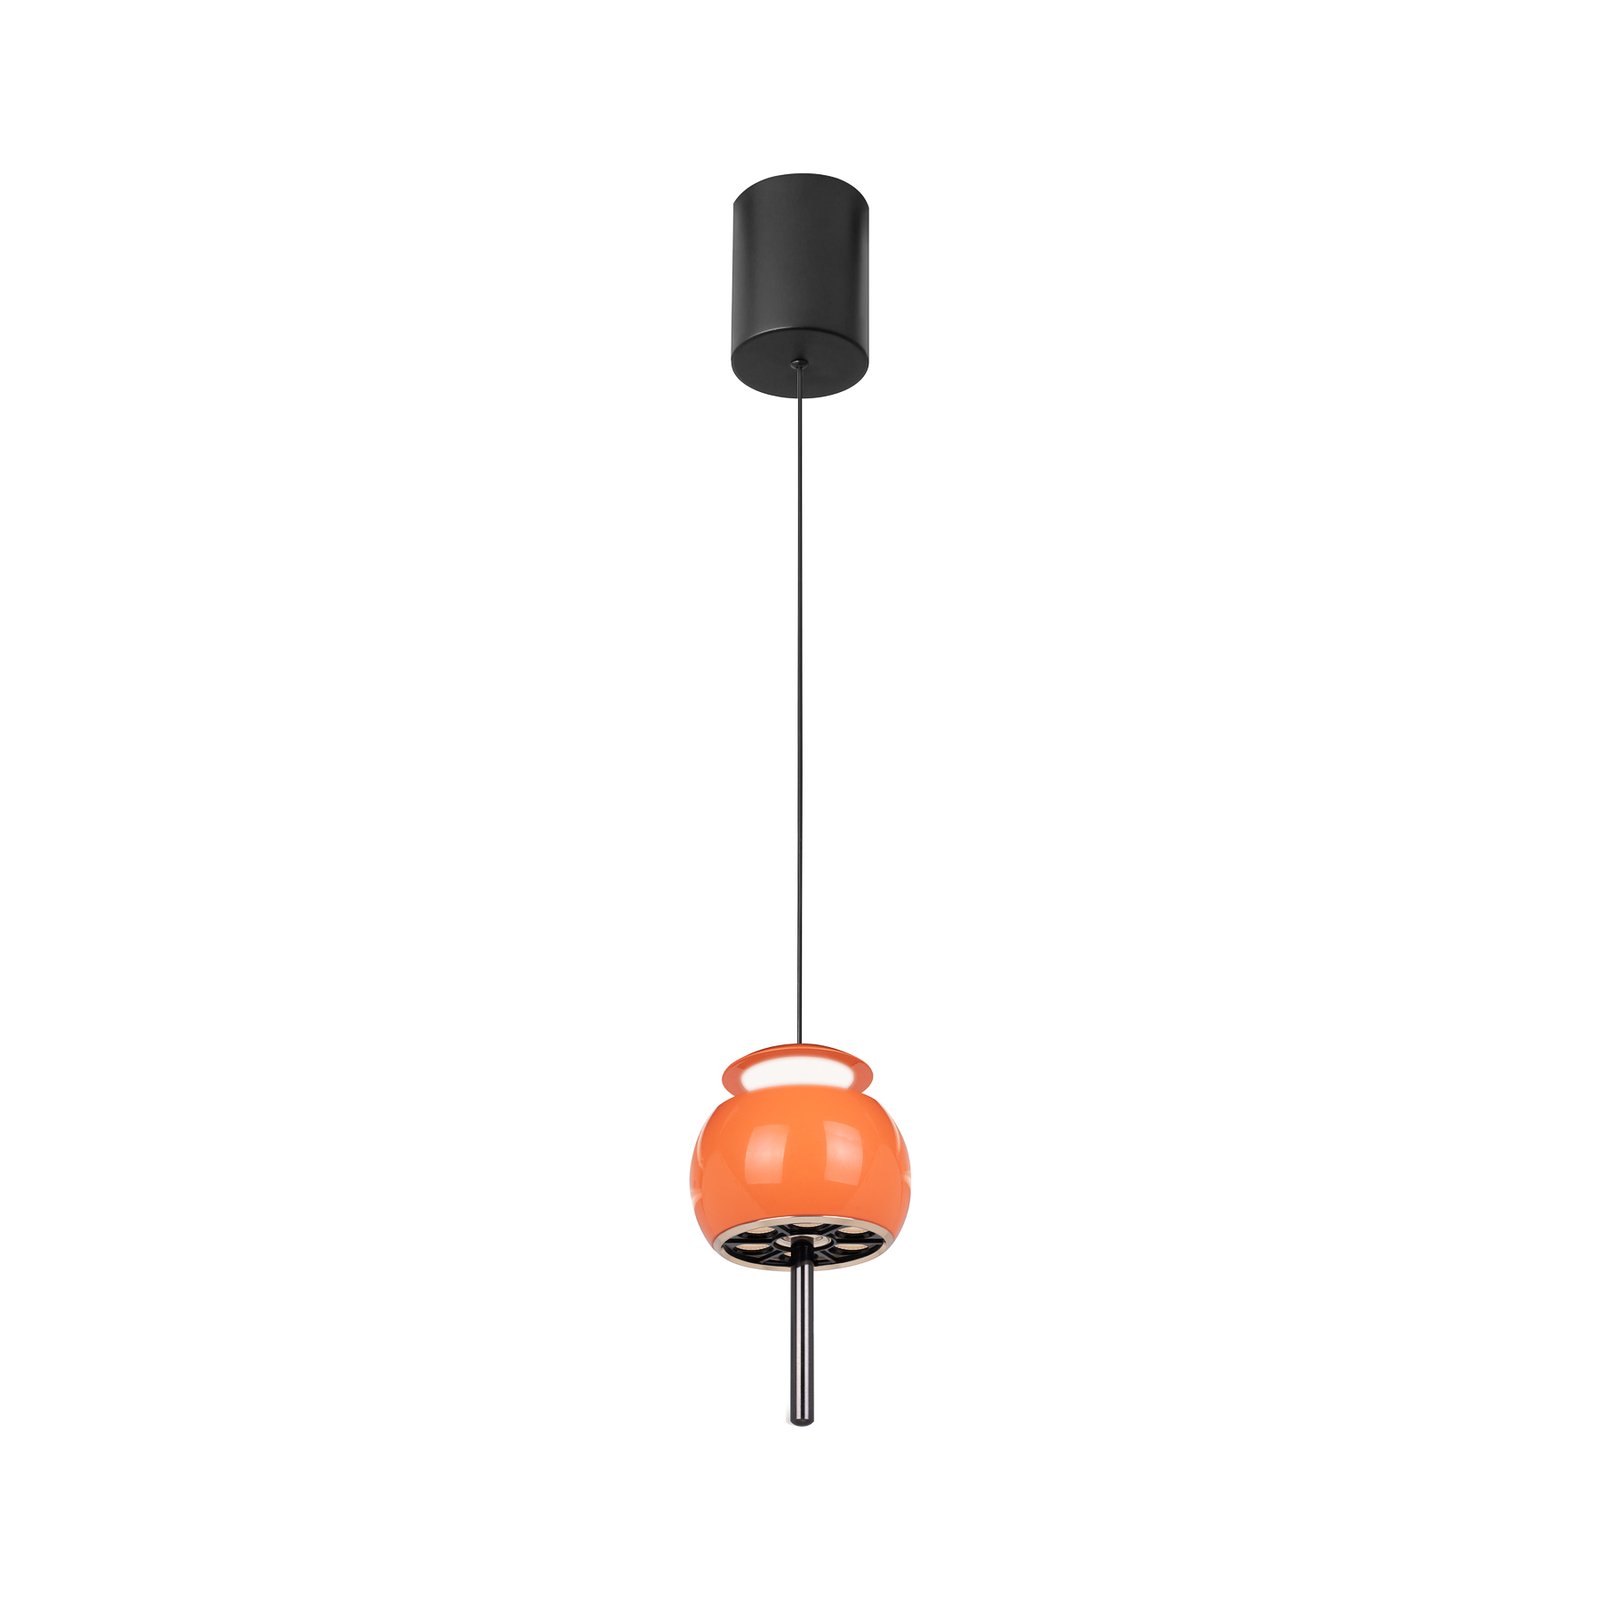 Candeeiro de suspensão Roller LED, cor de laranja, regulável em altura,